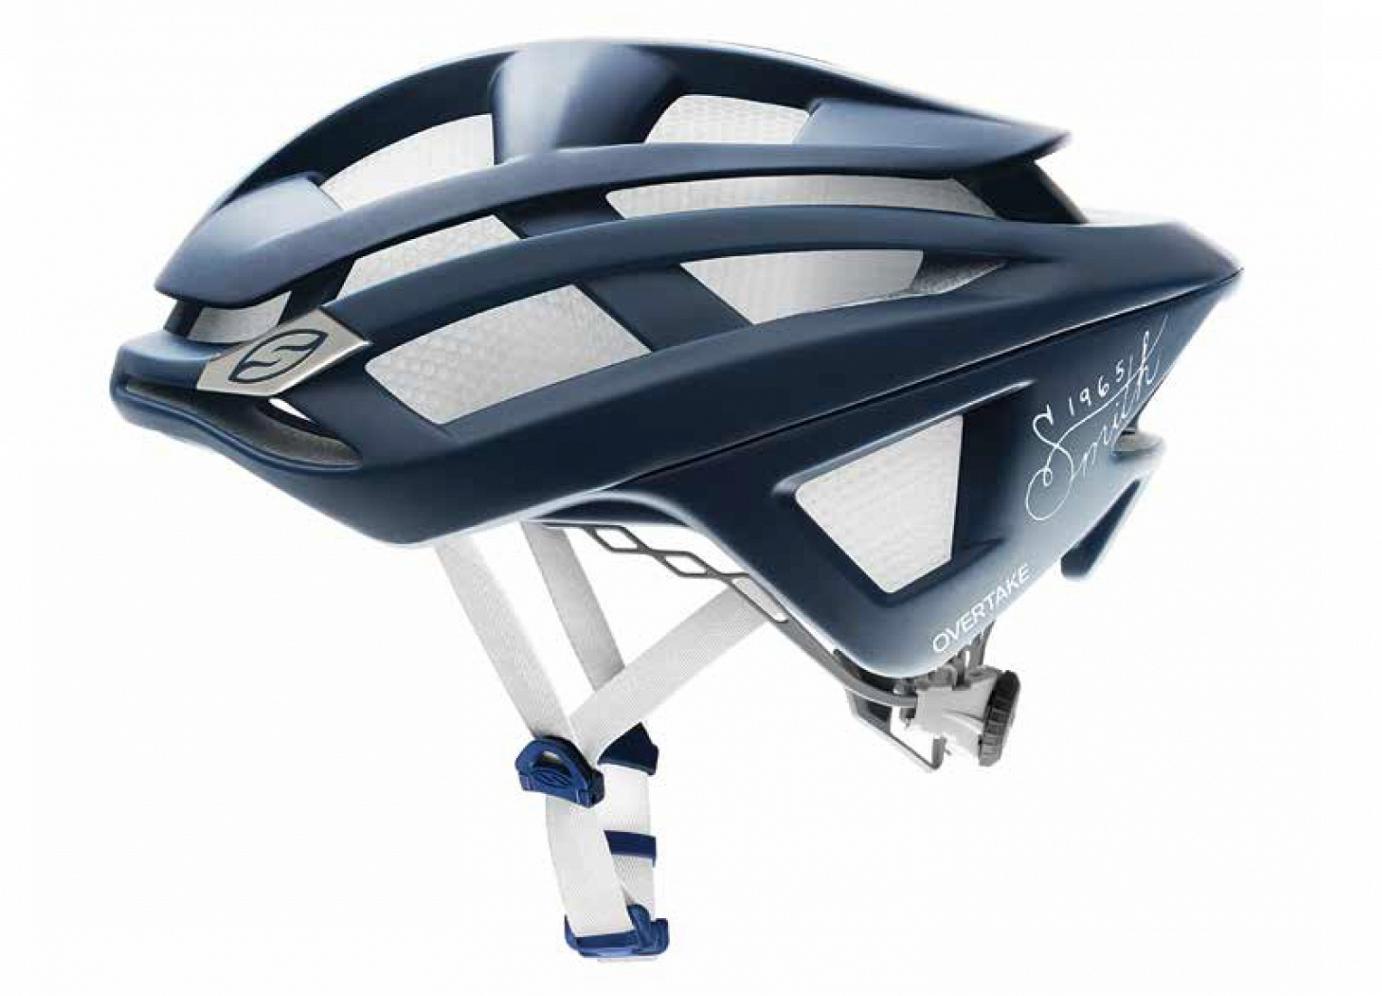 CapoVelo.com - Smith to Launch New Overtake Helmet